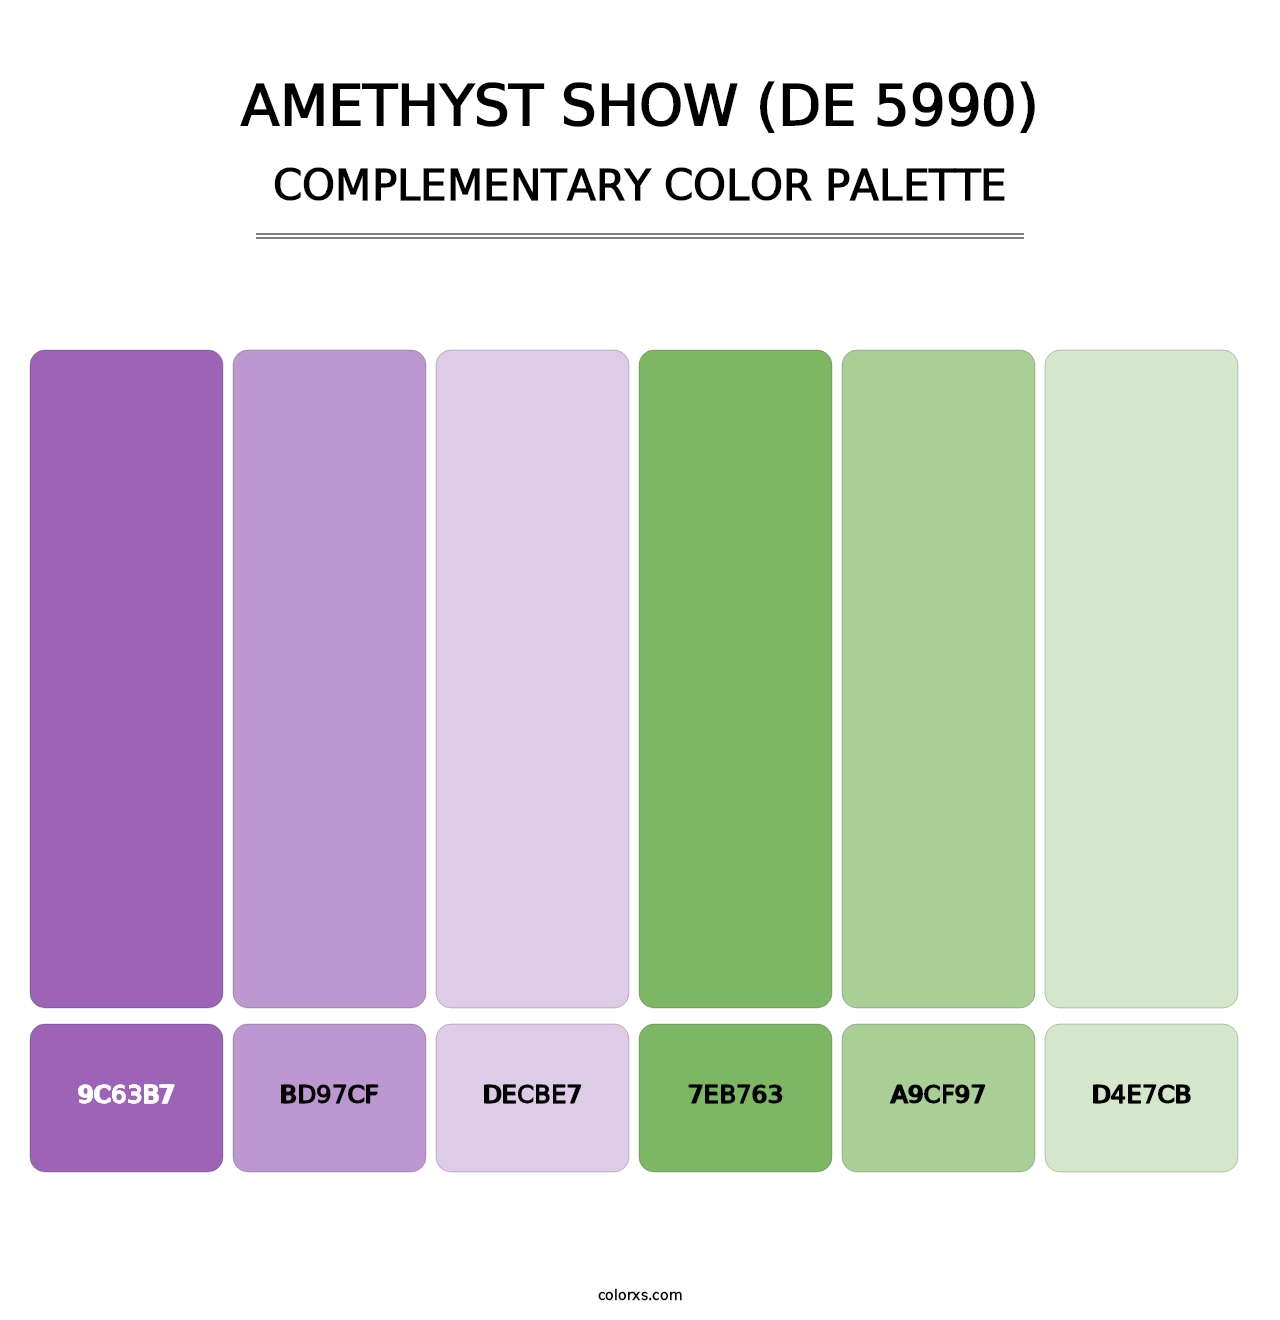 Amethyst Show (DE 5990) - Complementary Color Palette